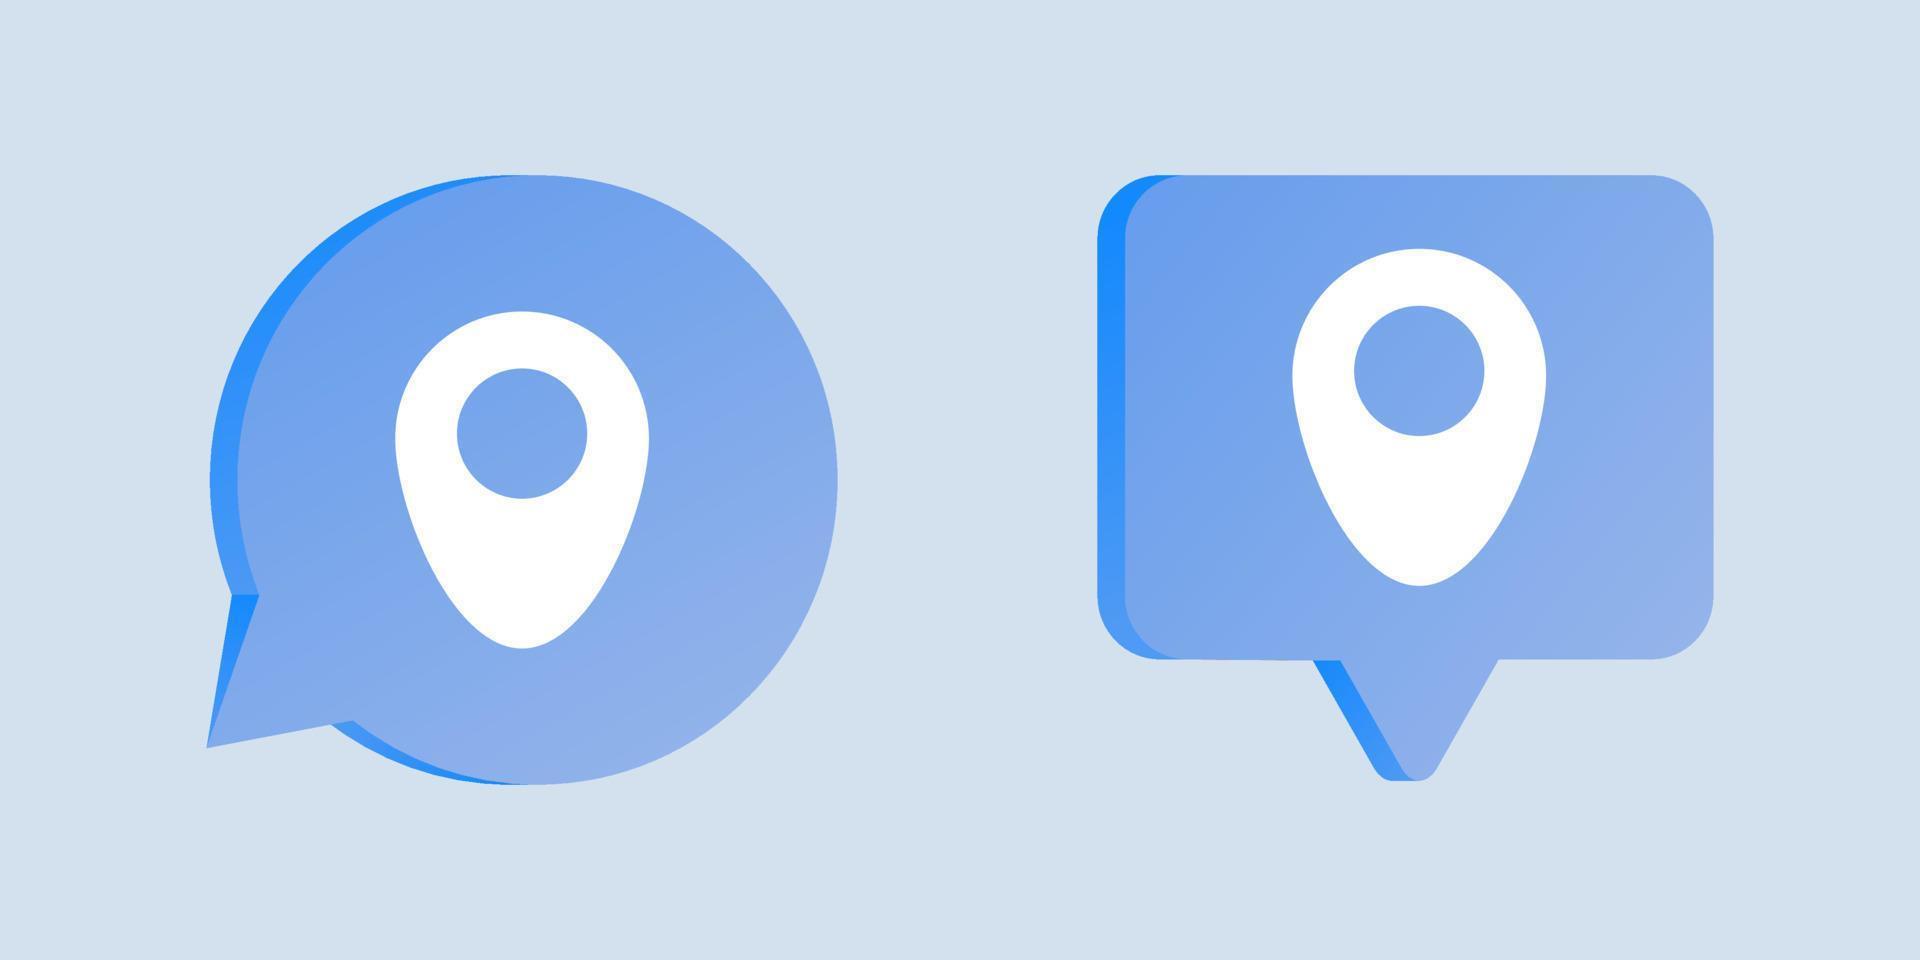 puntero pin ubicación navegación gps marca de búsqueda símbolo en chat de burbujas de voz 3d vector